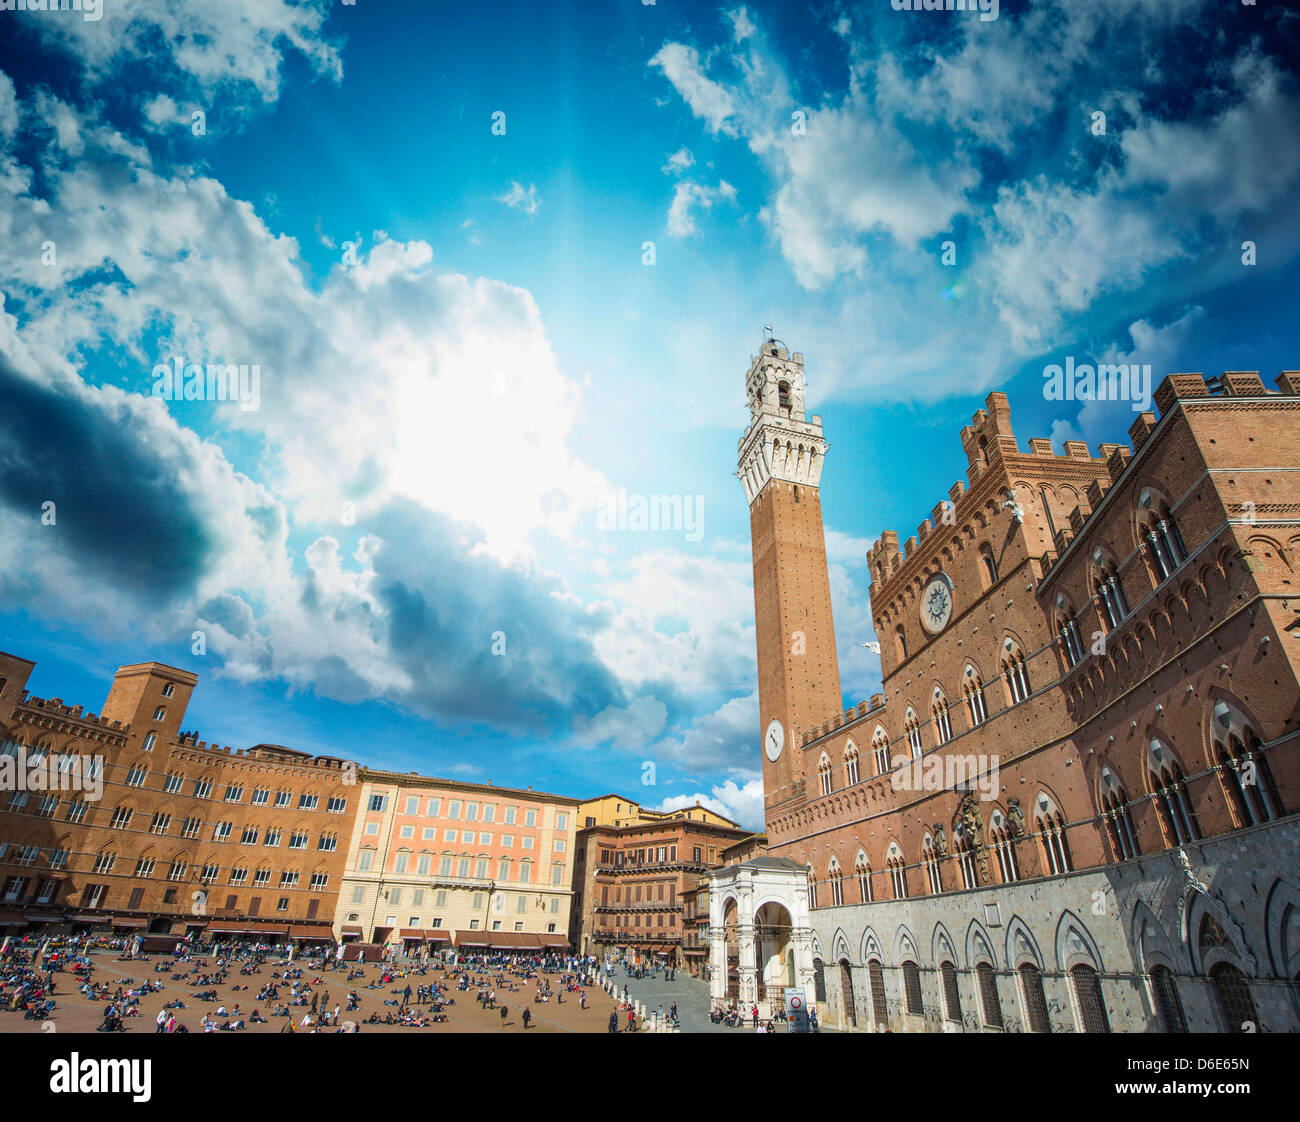 Grand-angle magnifique vue sur la Piazza del Campo à Sienne, Italie. Banque D'Images